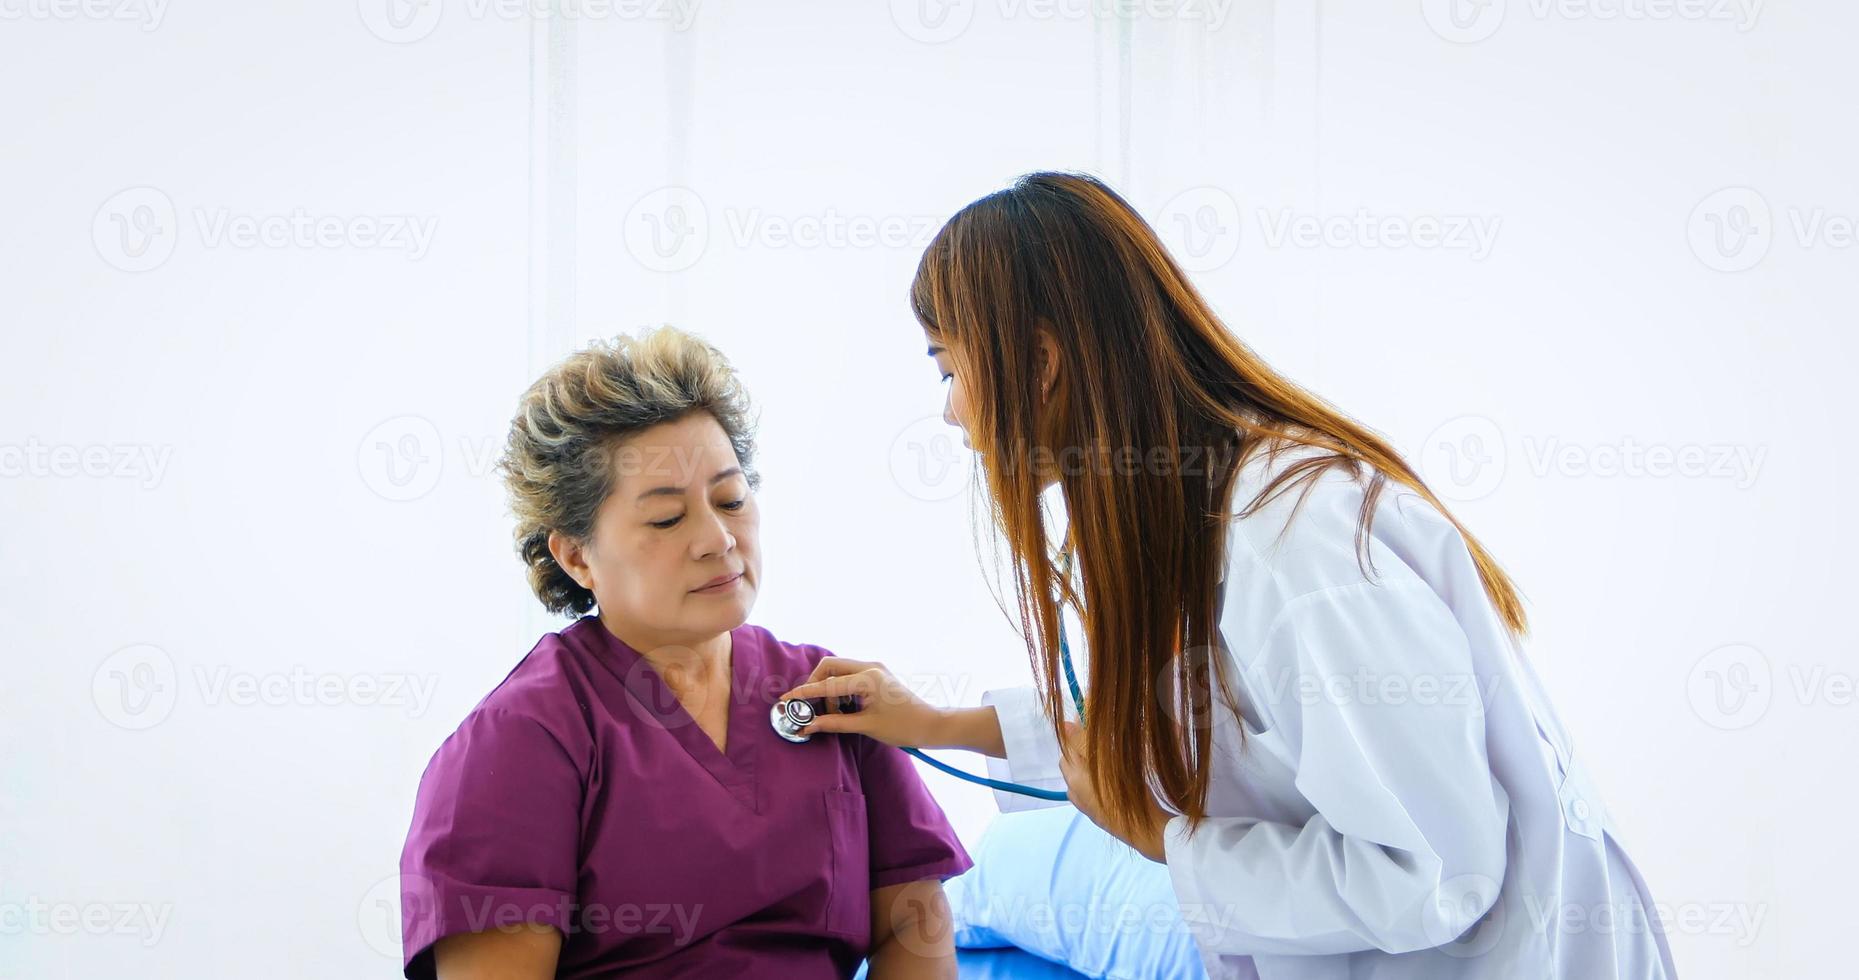 läkaren använde ett stetoskop för att kontrollera lungorna hos den äldre kvinnan på sjukhuset. foto